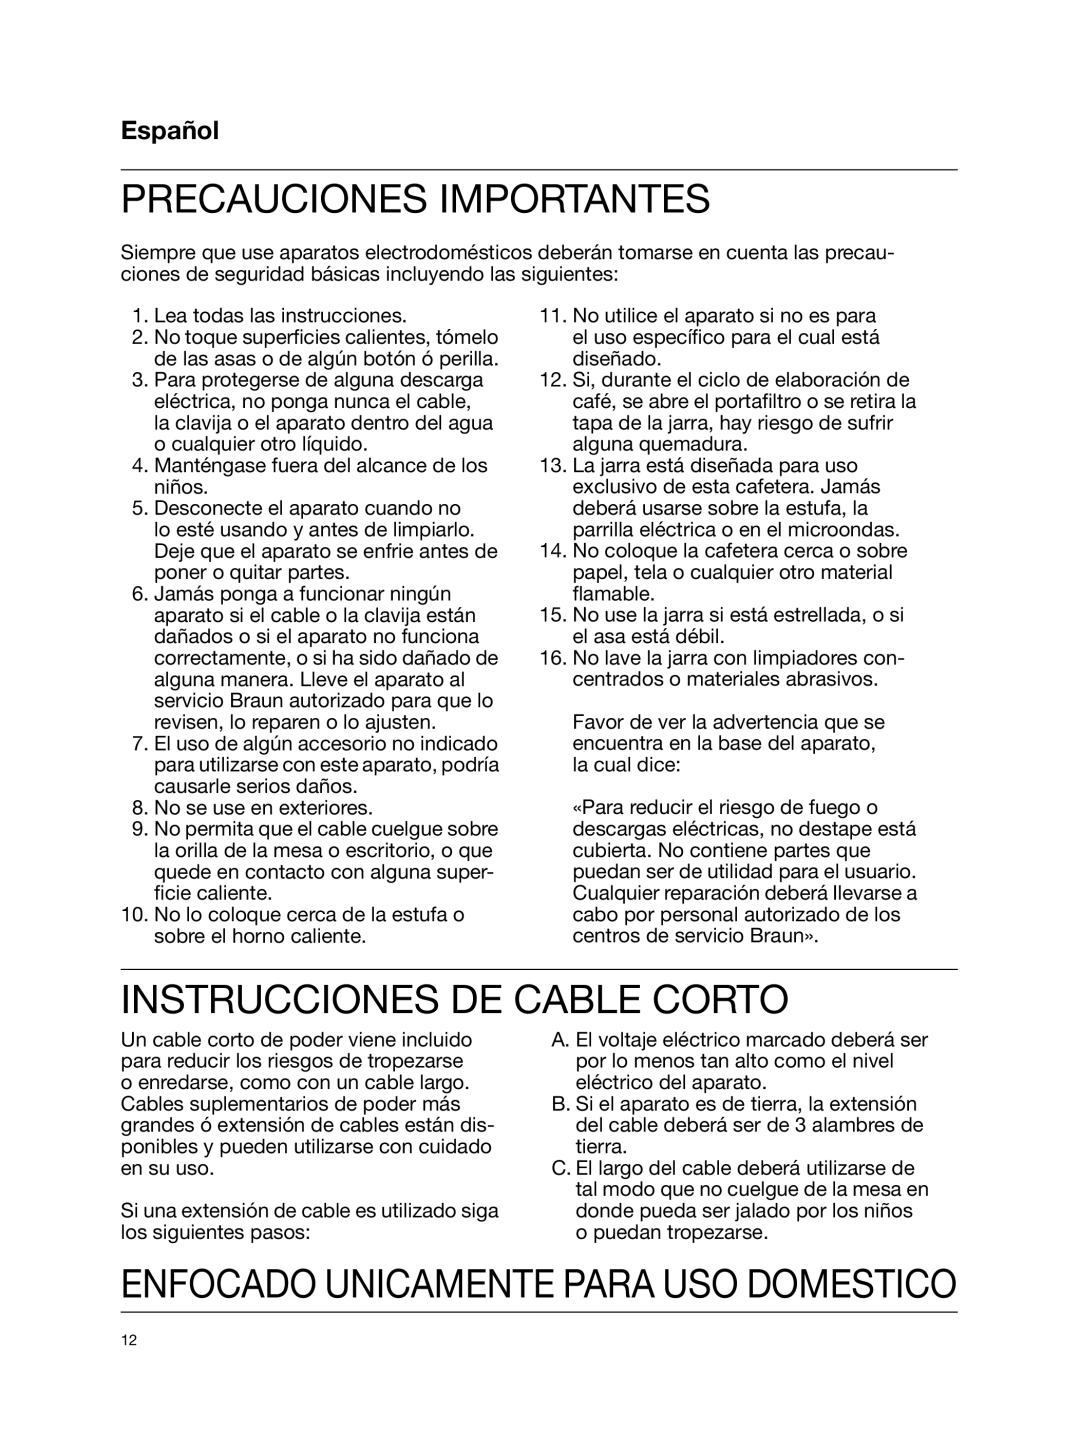 Braun KF580 manual Precauciones Importantes, Instrucciones De Cable Corto, Español, Enfocado Unicamente Para Uso Domestico 